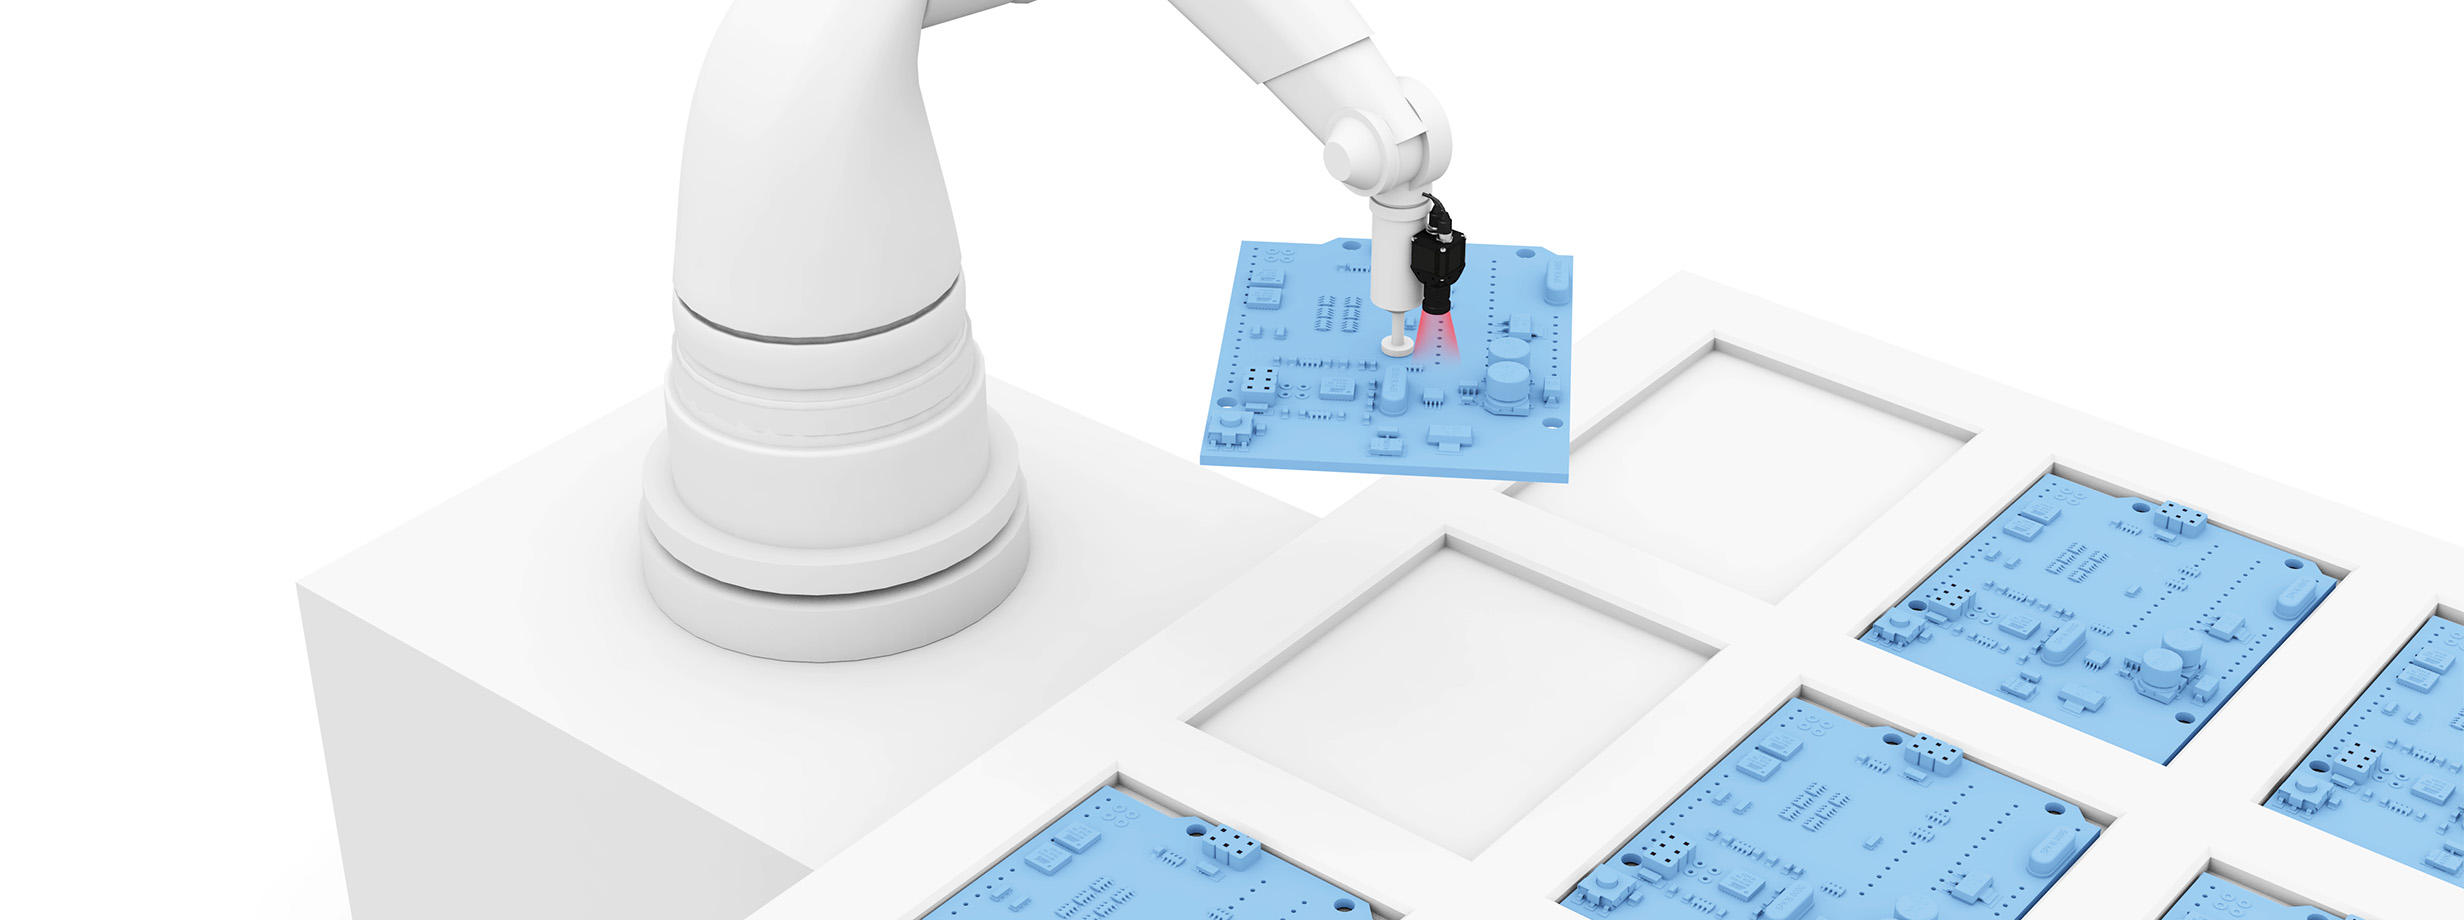 Controllo preciso dei robot nelle applicazioni pick-and-place image